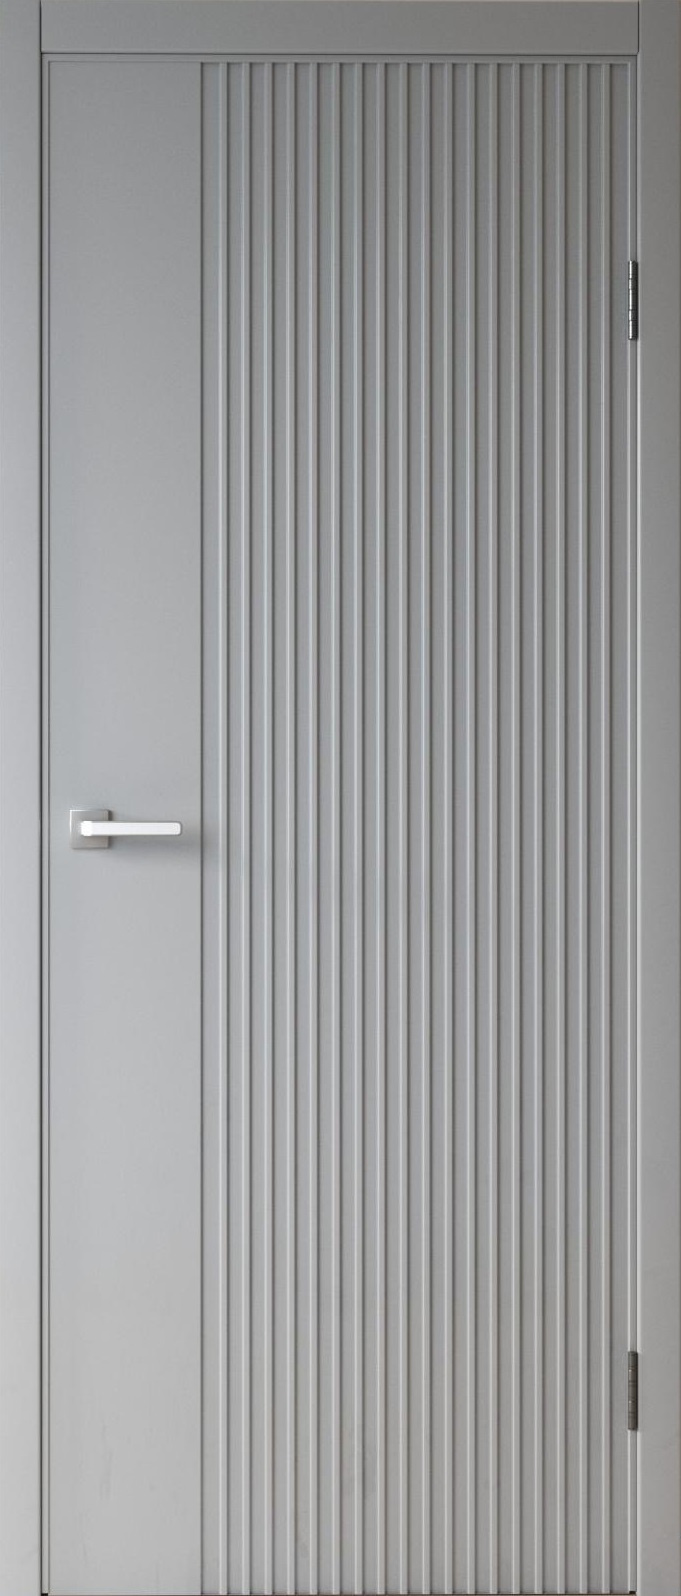 SV-Design Межкомнатная дверь Палермо, арт. 24888 - фото №1